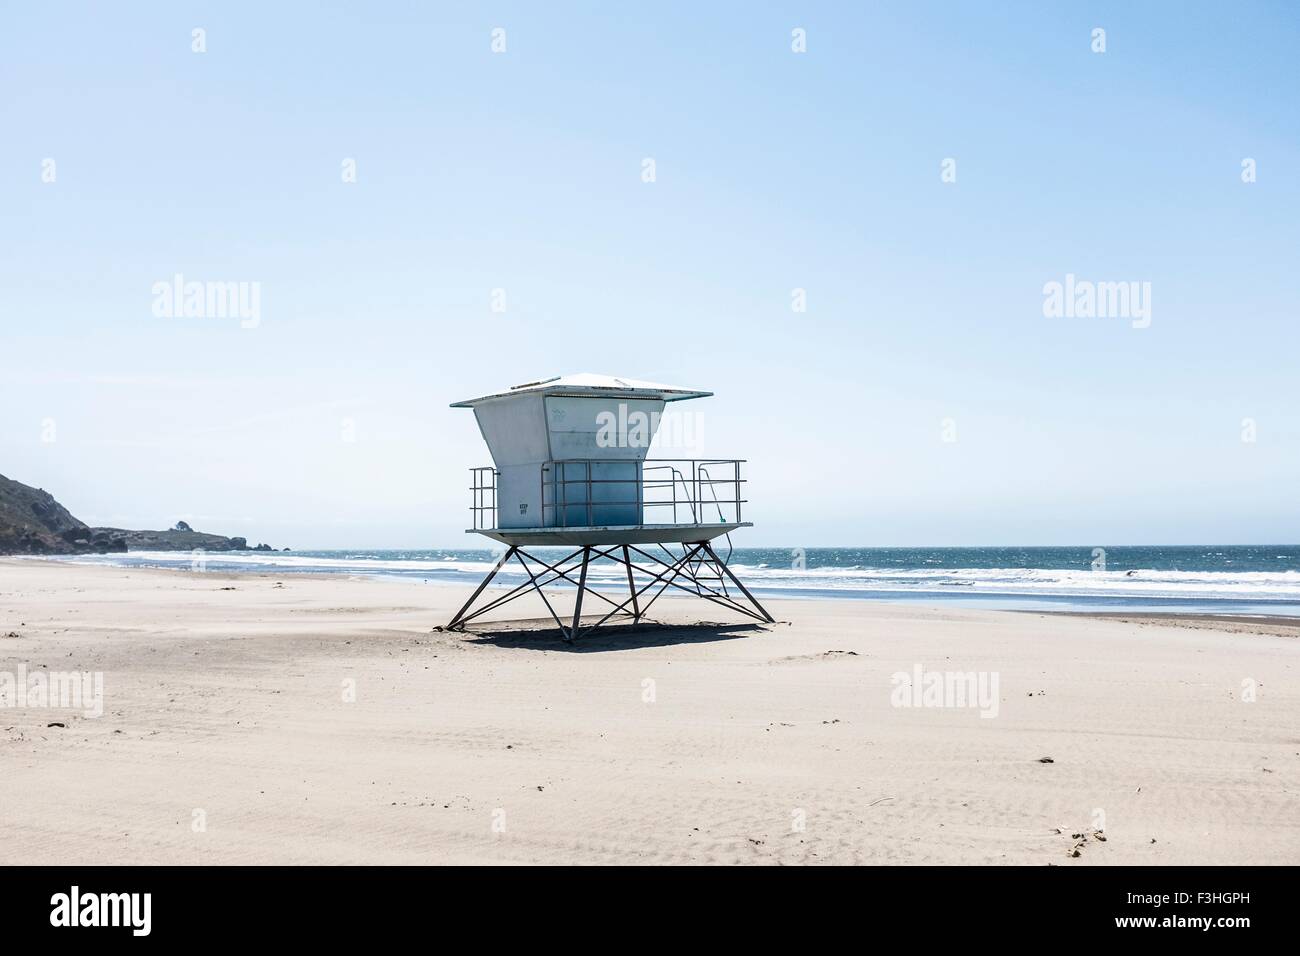 Lifeguard tower on beach, Mendocino County, California, USA Stock Photo